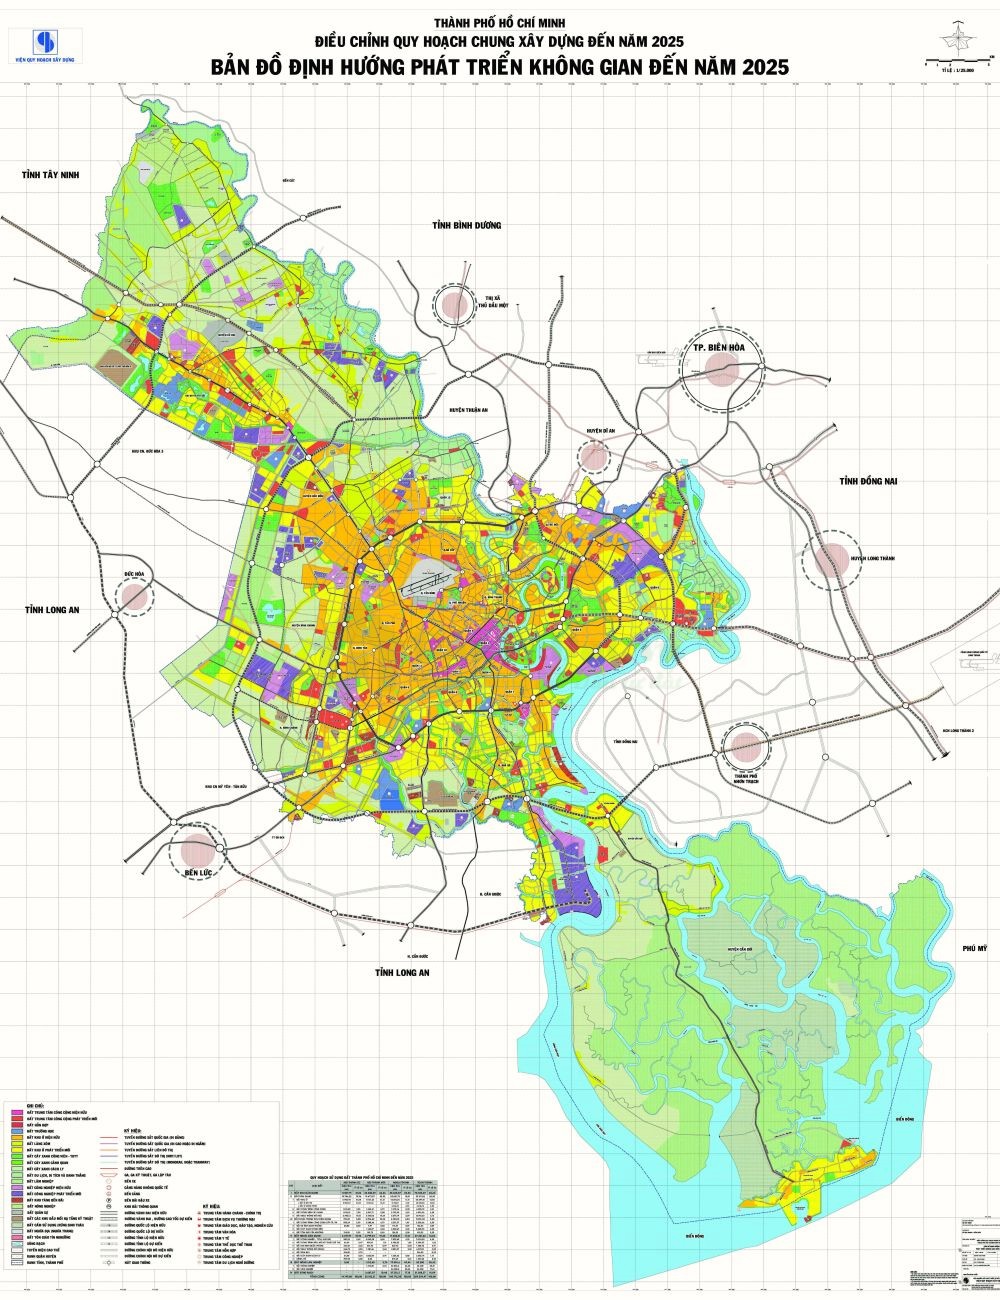 Bản đồ TP HCM chi tiết nhất 2024 sẽ cung cấp cho bạn thông tin tối ưu về các khu vực tại thành phố. Bạn sẽ dễ dàng phát hiện ra các điểm du lịch, nhà hàng, khách sạn hay mua sắm. Bản đồ này sẽ giúp bạn trải nghiệm hơn ở TP Hồ Chí Minh trong tương lai.